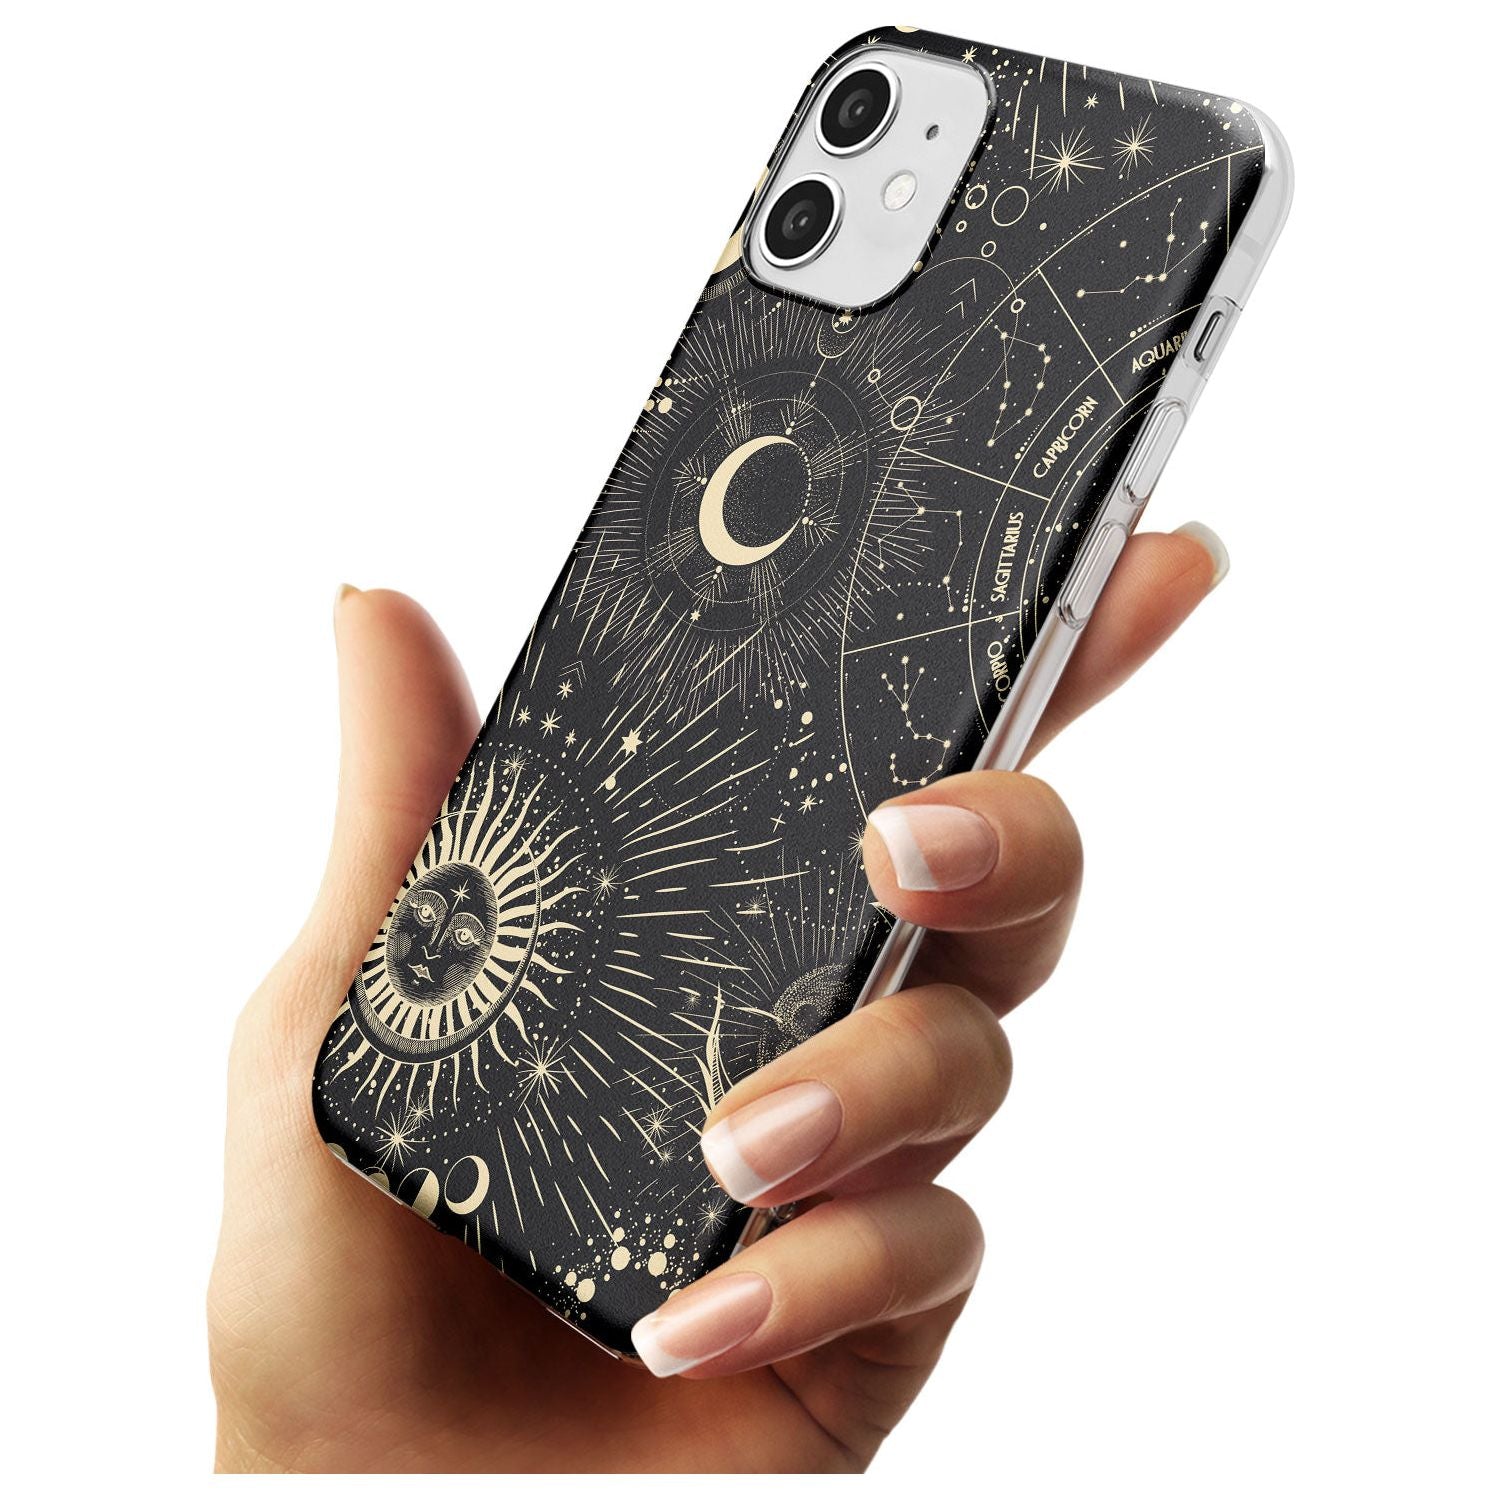 Sun & Symbols Black Impact Phone Case for iPhone 11